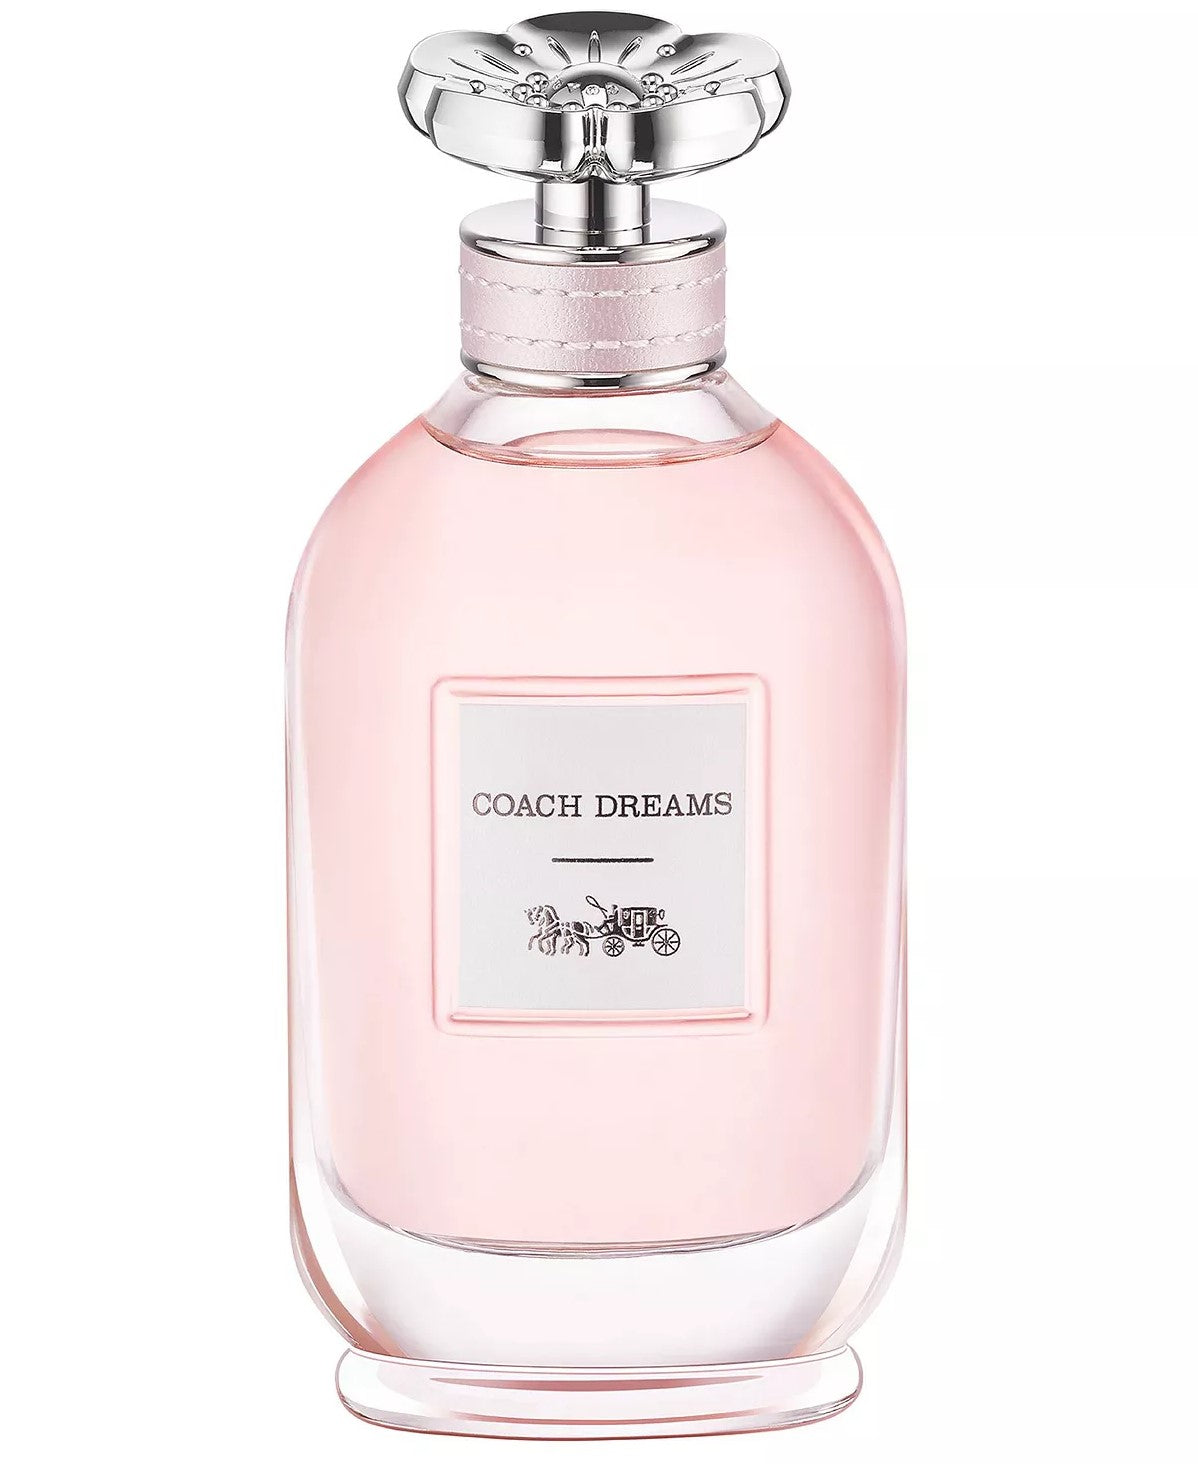 Dreams Eau de Parfum Spray, 3.0 oz